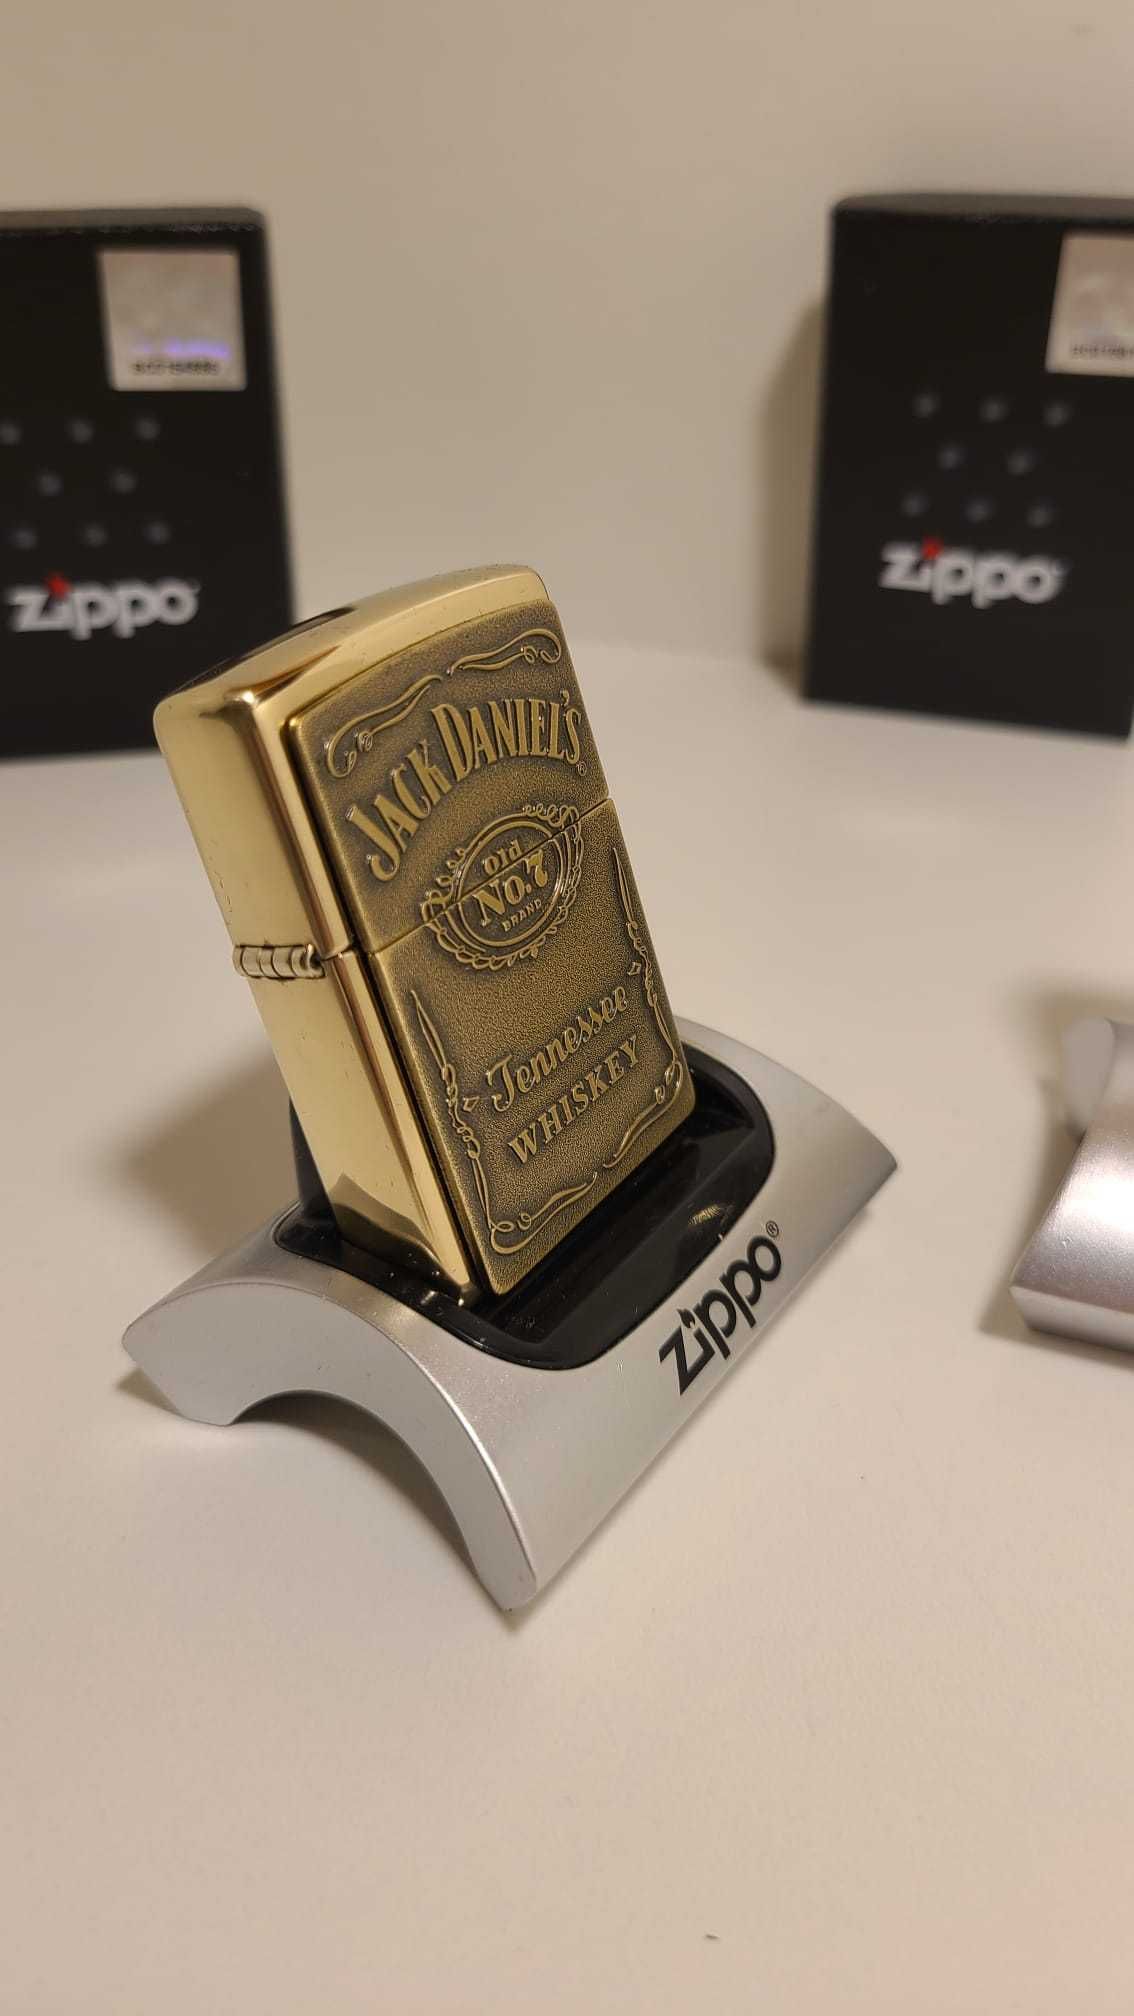 Bricheta Zippo gravata Jack Daniel's Tennessee Whiskey gold USA